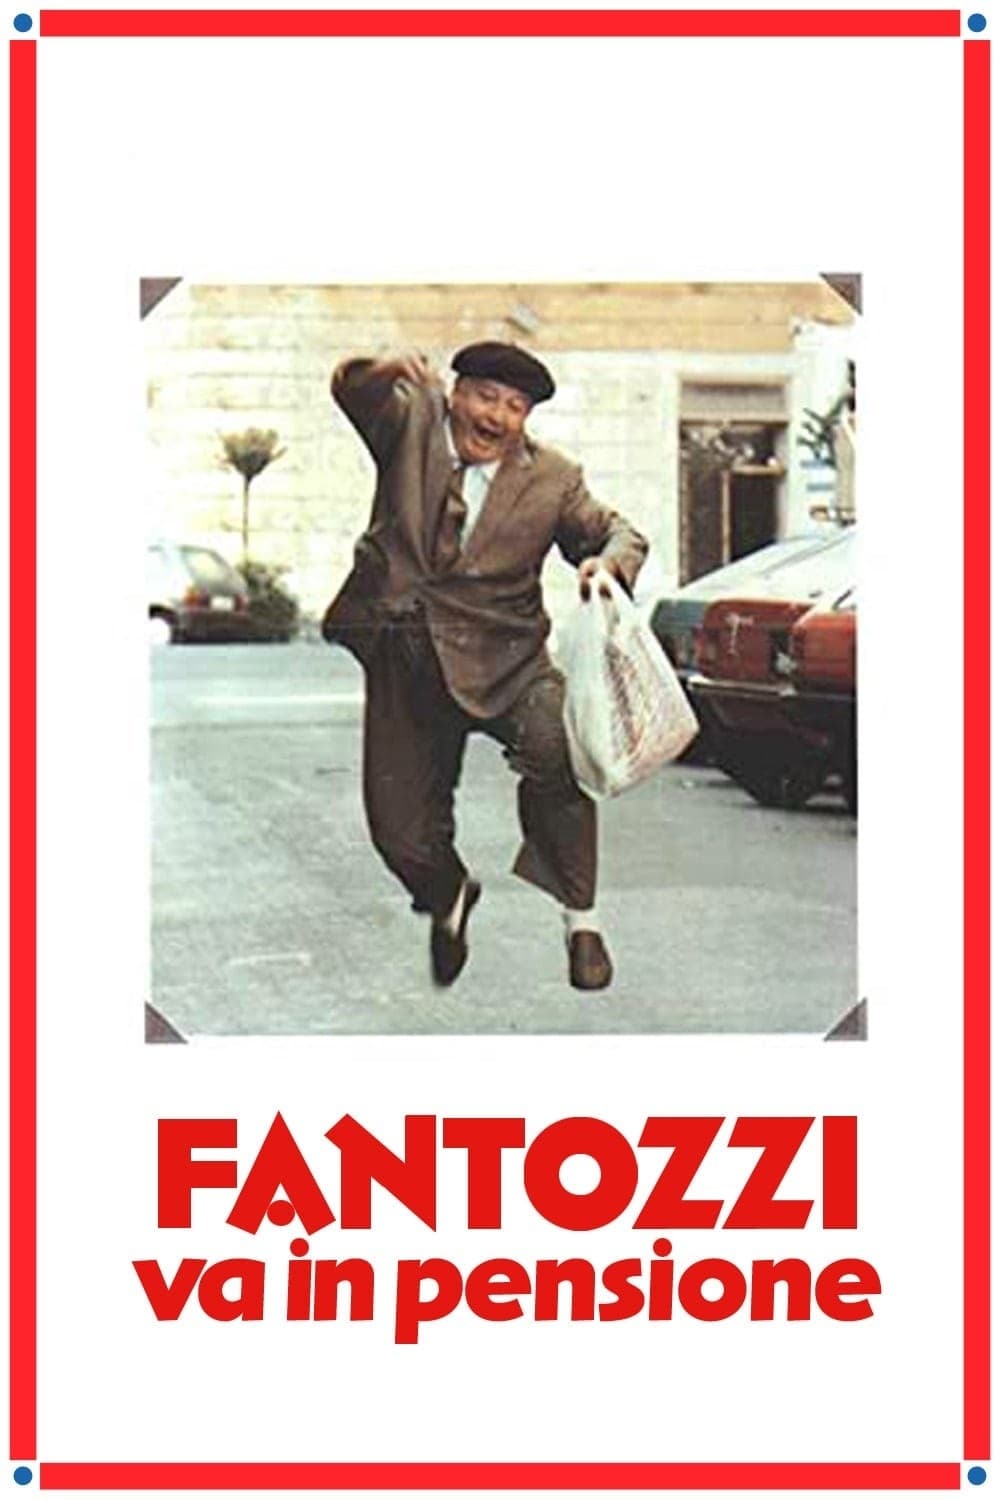 Fantozzi geht in Pension (1988)